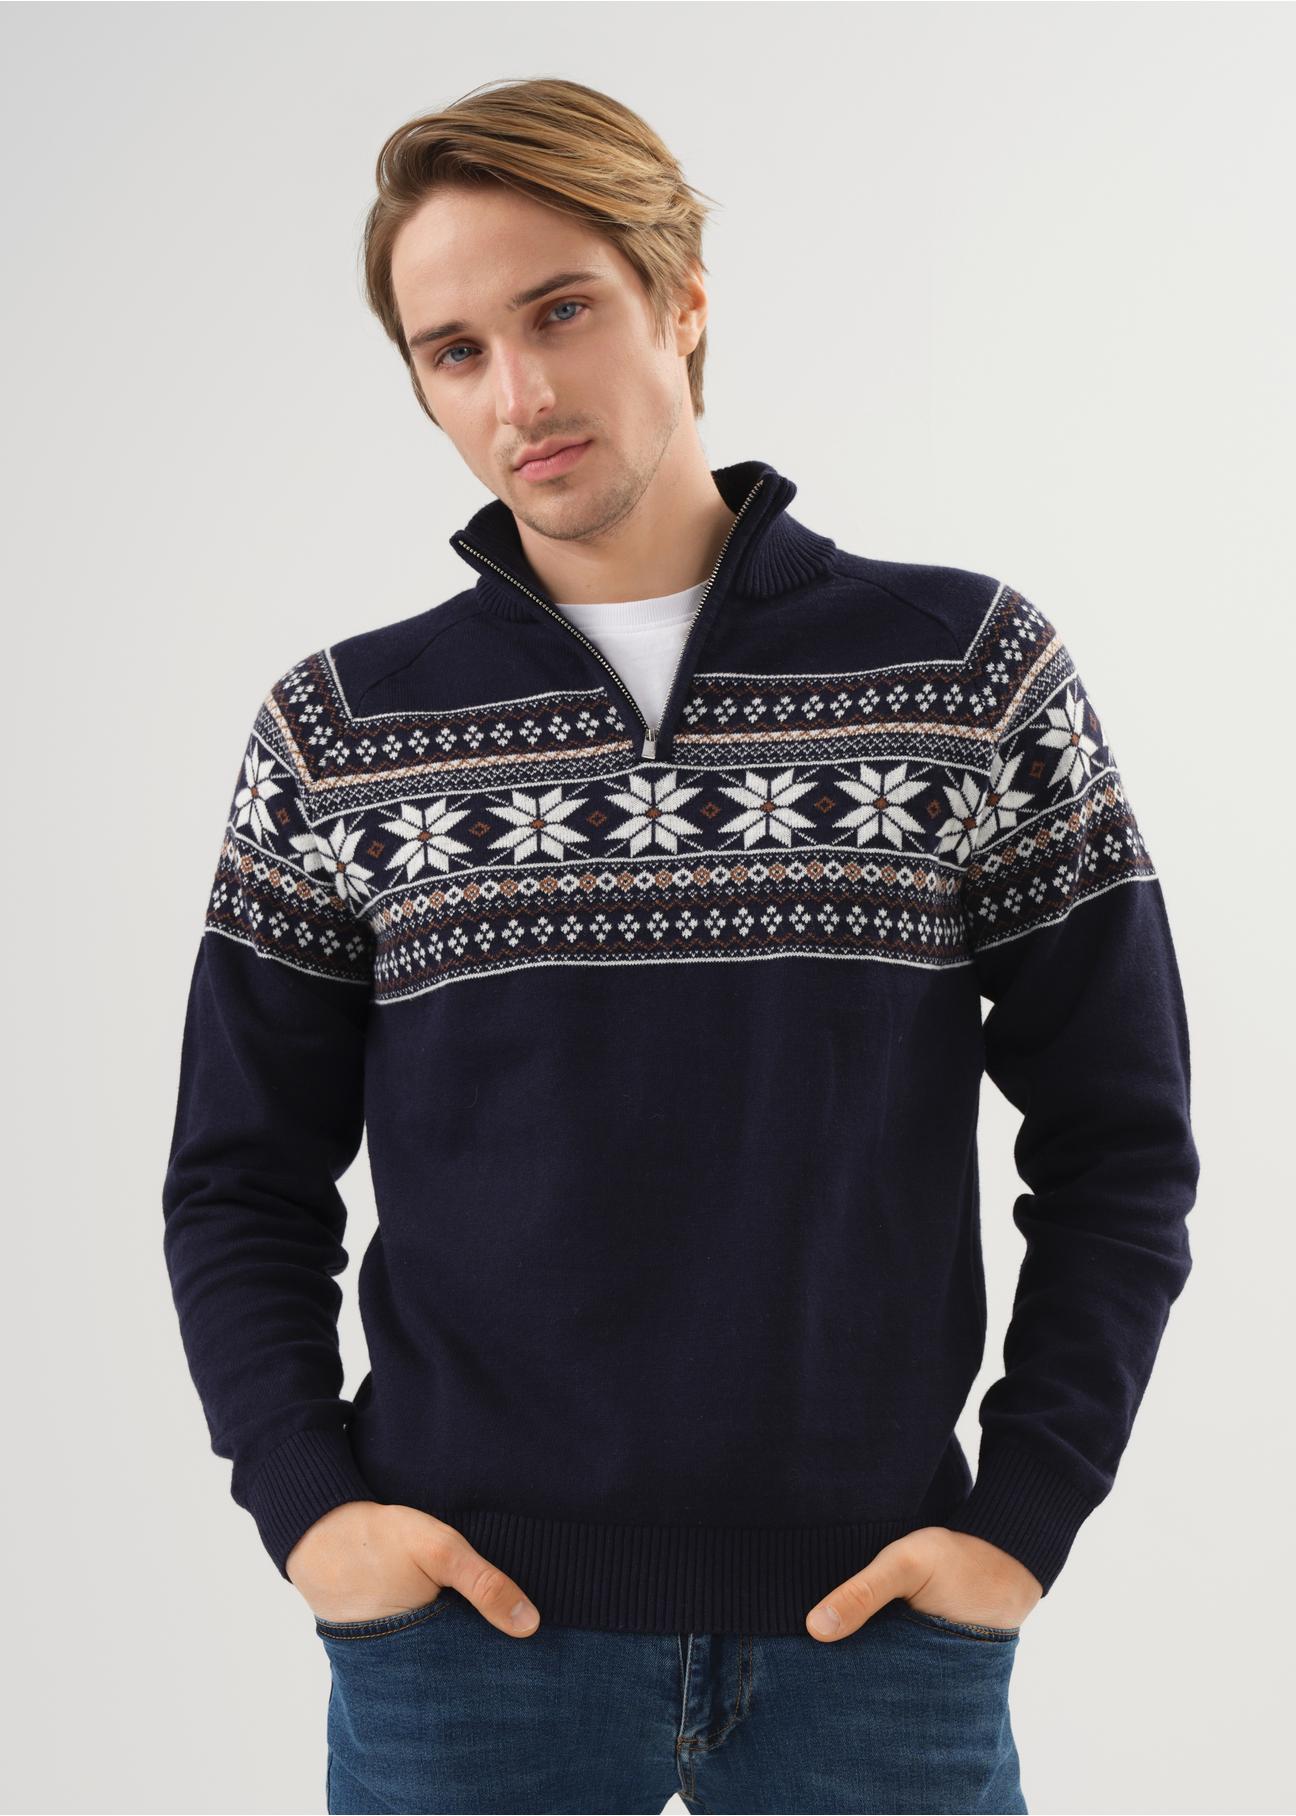 Granatowy sweter męski we wzór norweski SWEMT-0133-69(Z23)